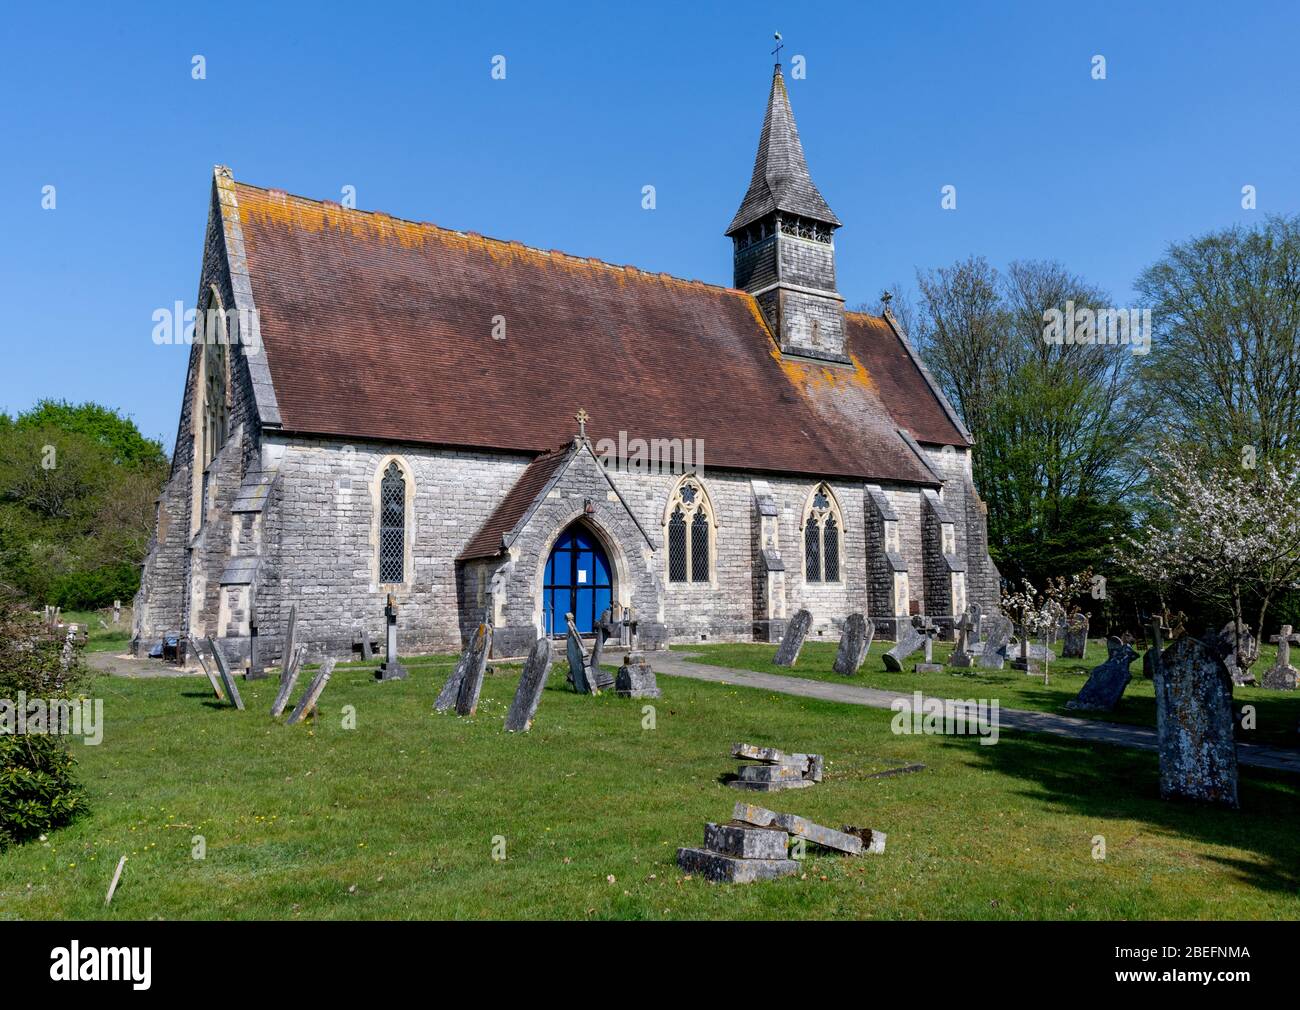 St Matthews chiesa parrocchiale del villaggio di Netley Marsh, Hampshire, Inghilterra, Regno Unito Foto Stock